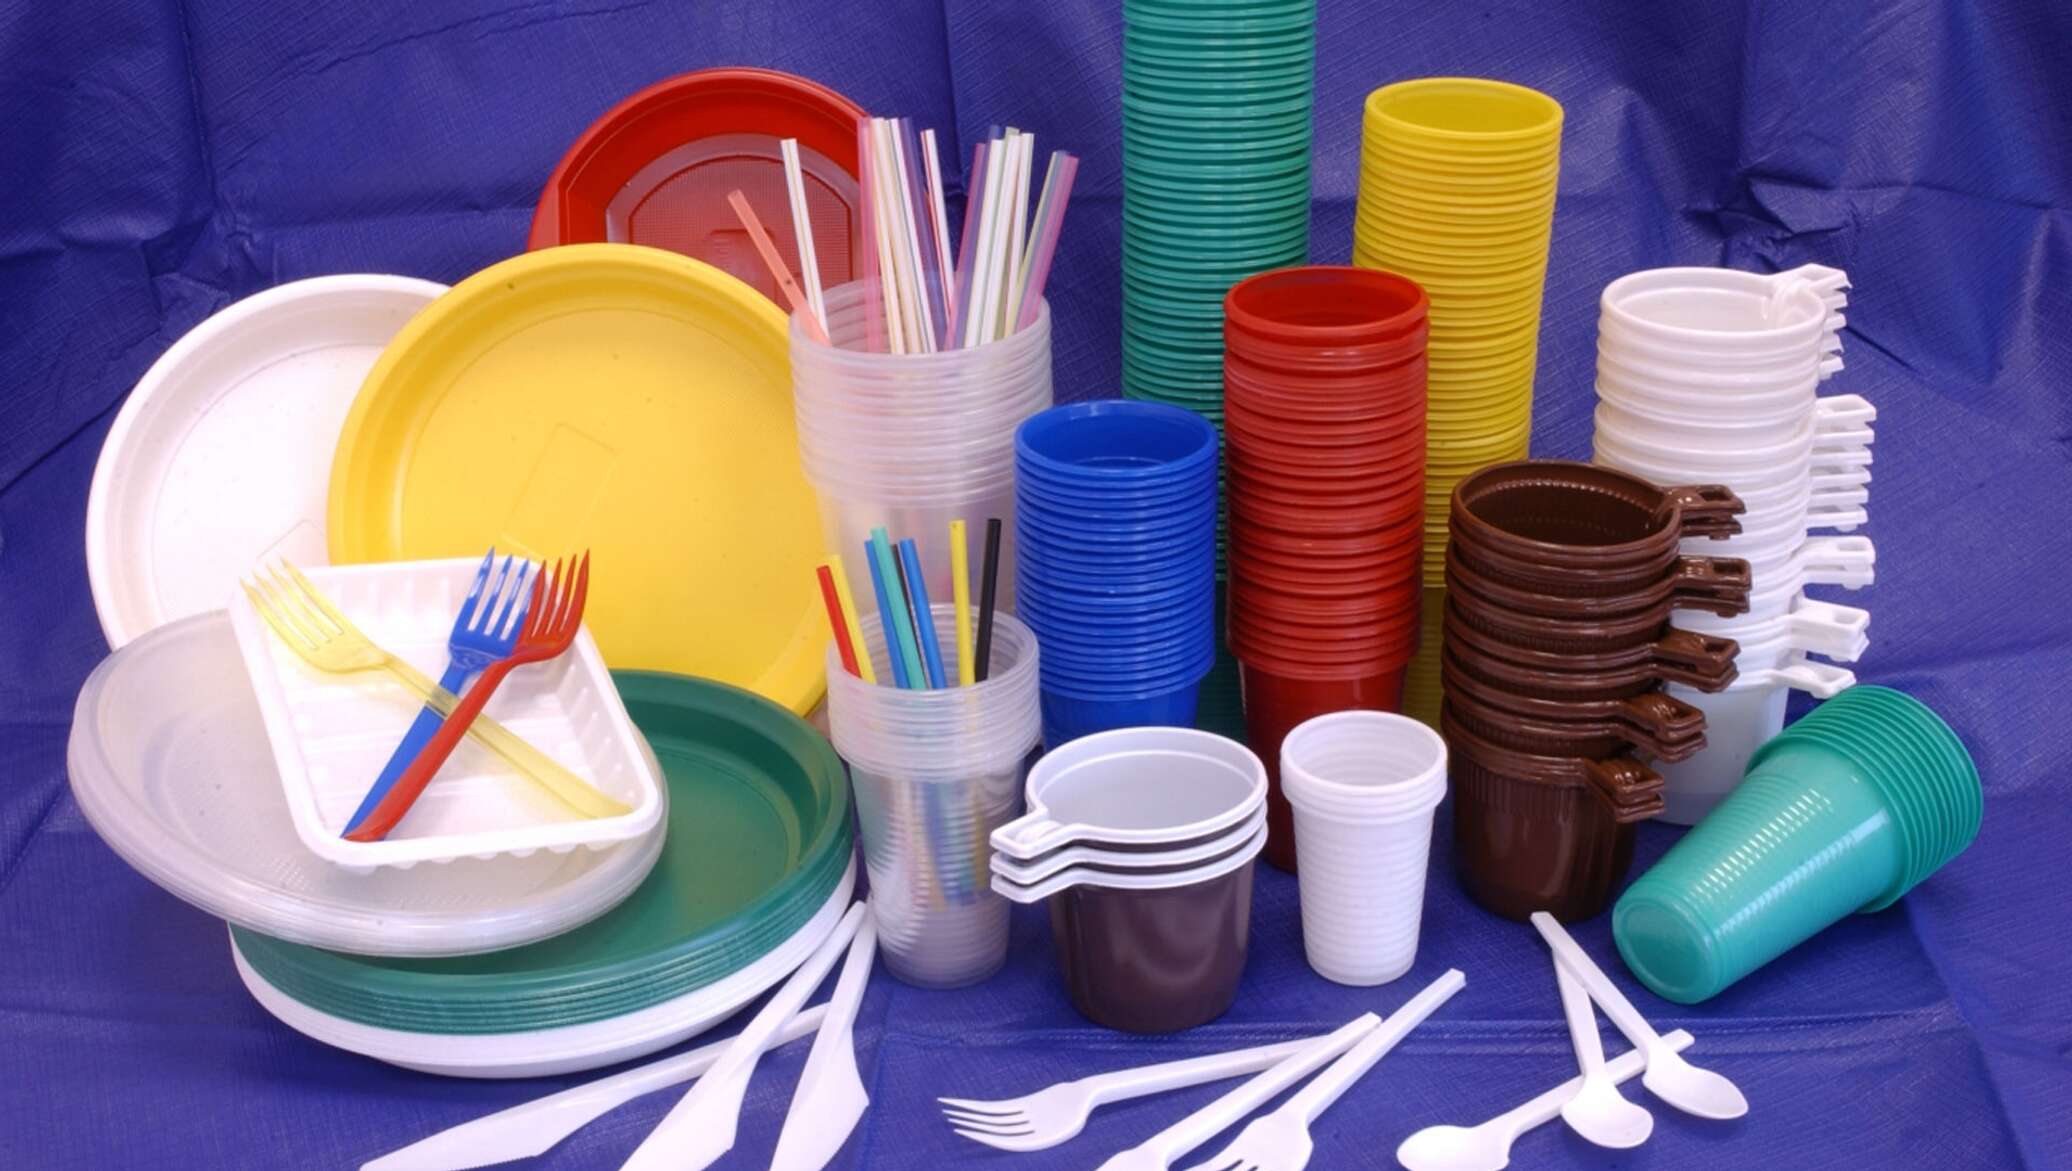 Купить одноразовую посуду пластиковую. Одноразовая посуда. Изделия из пластмассы. Пластмассовая посуда. Пластмассовая одноразовая посуда.